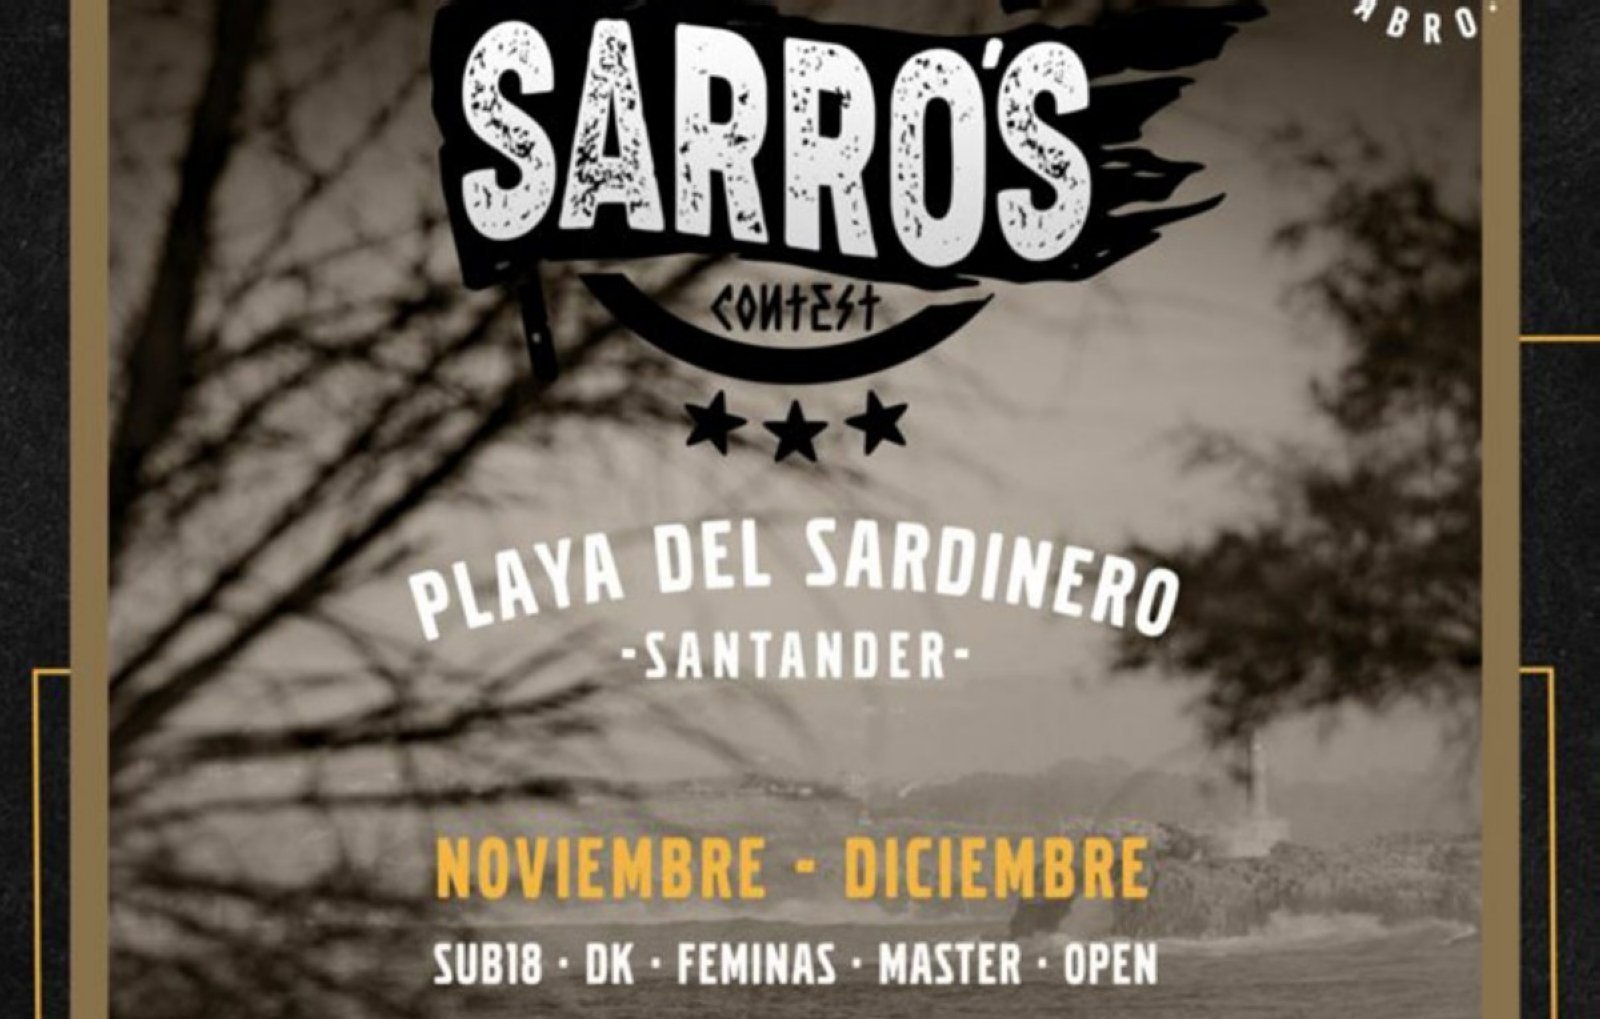 El I campeonato de bodyboard Sarros Contest en Santander